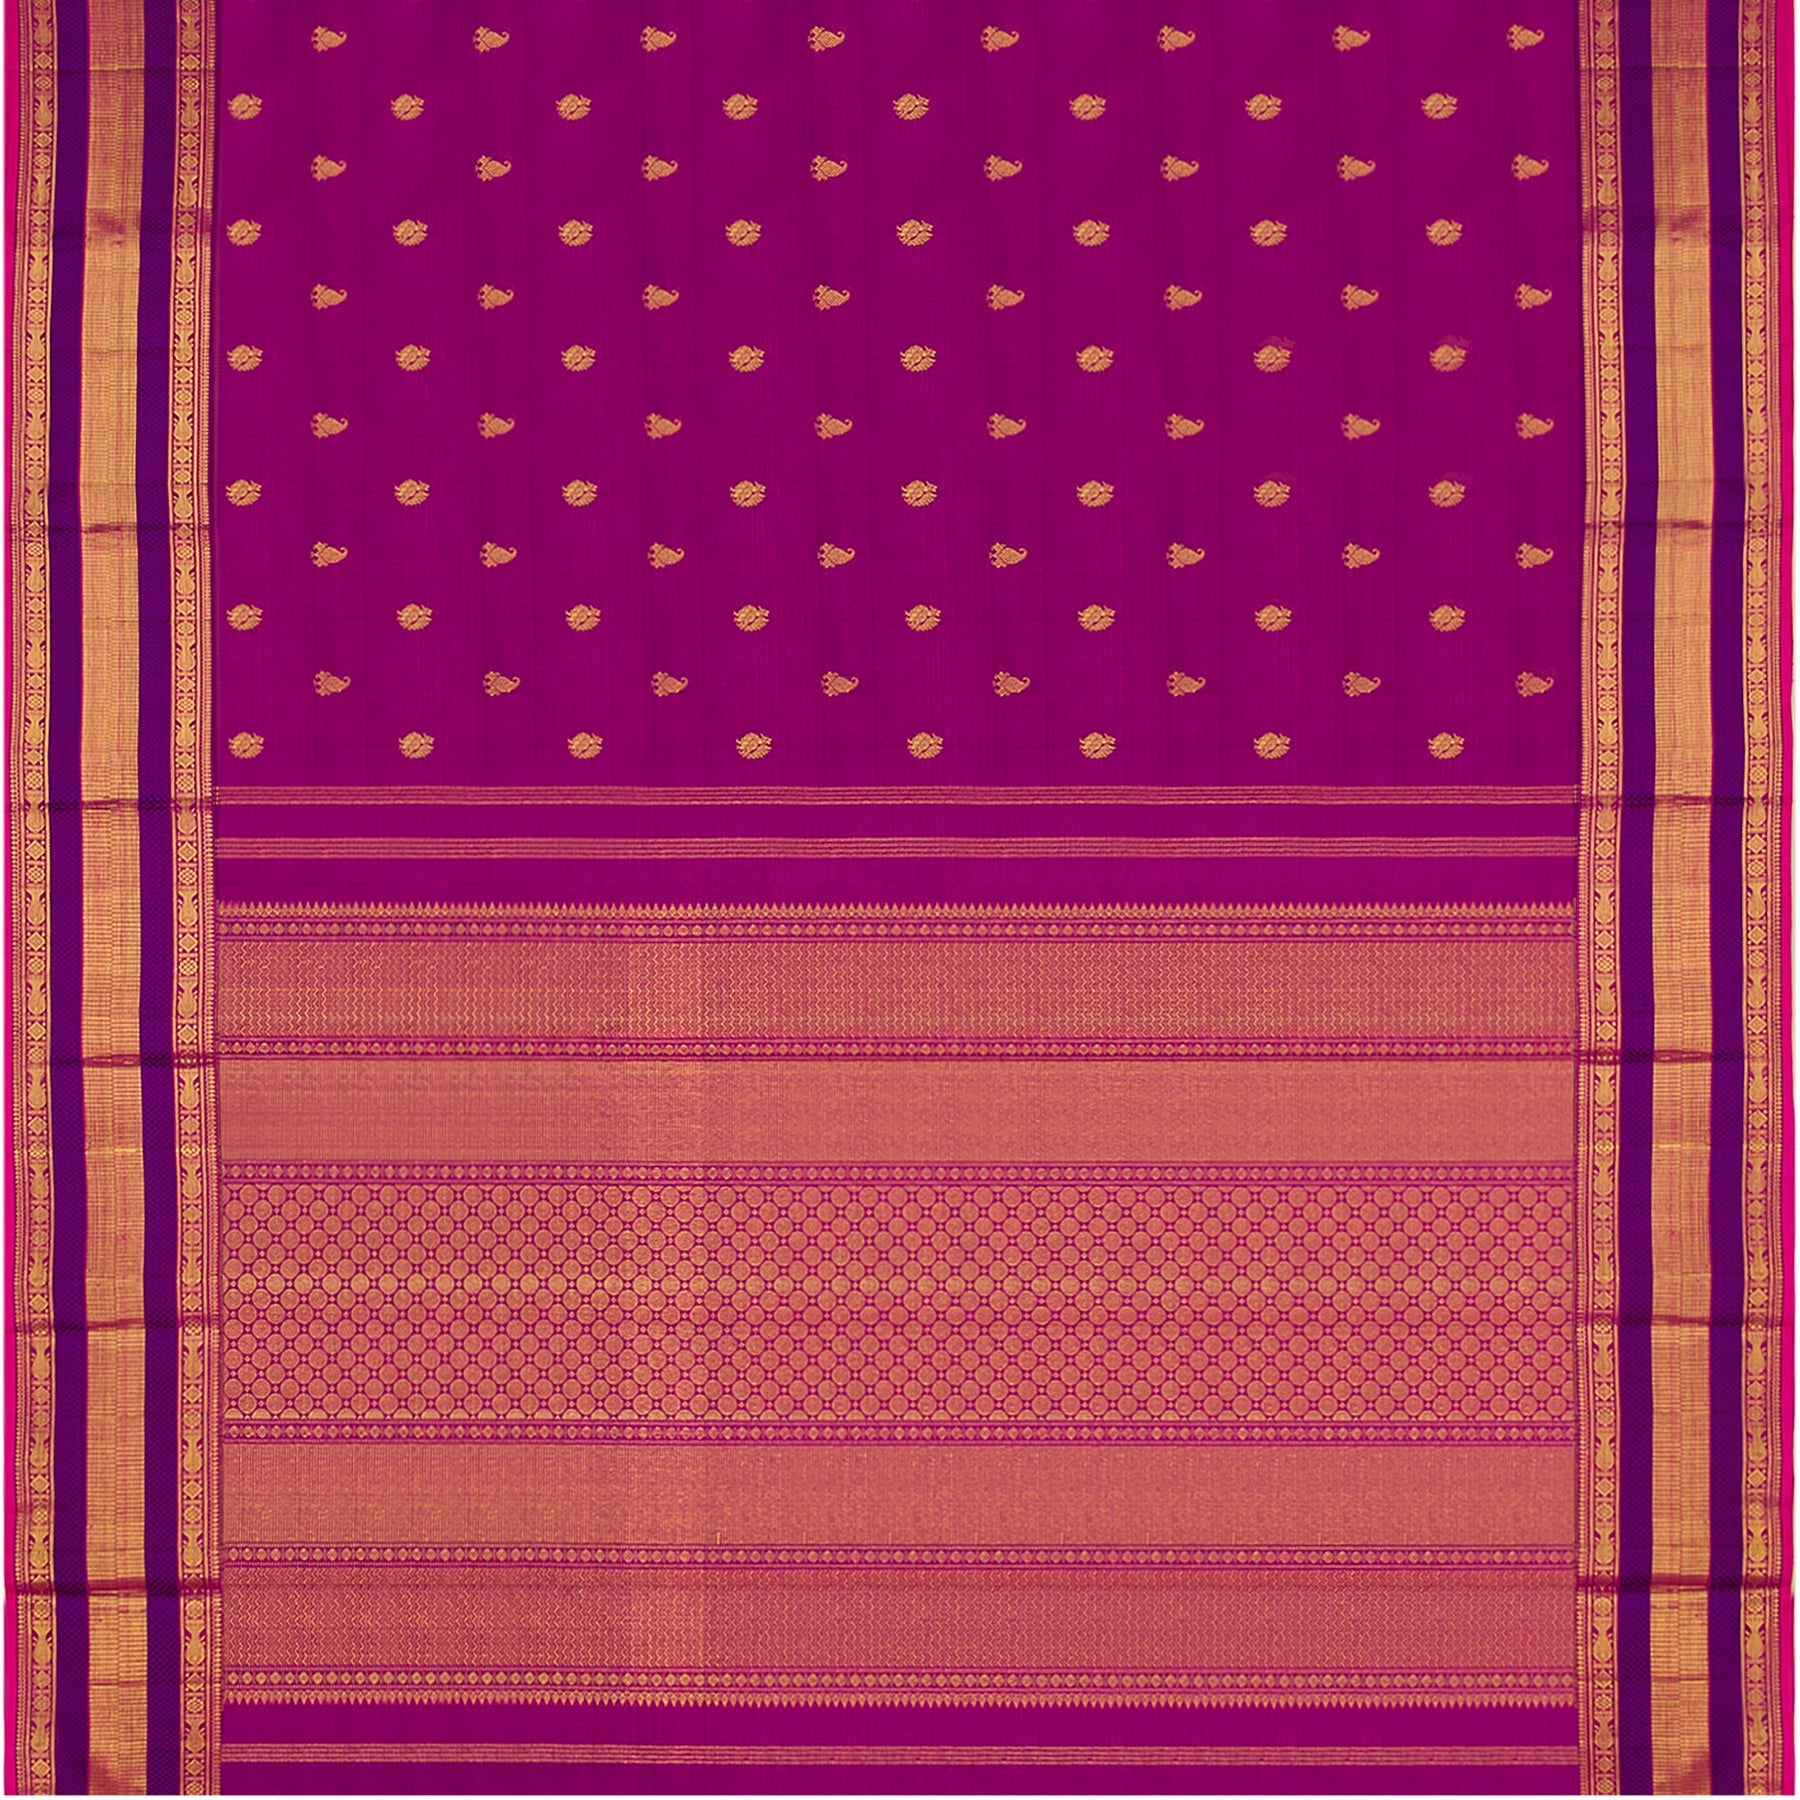 Kanakavalli Kanjivaram Silk Sari 21-110-HS001-04506 - Full View